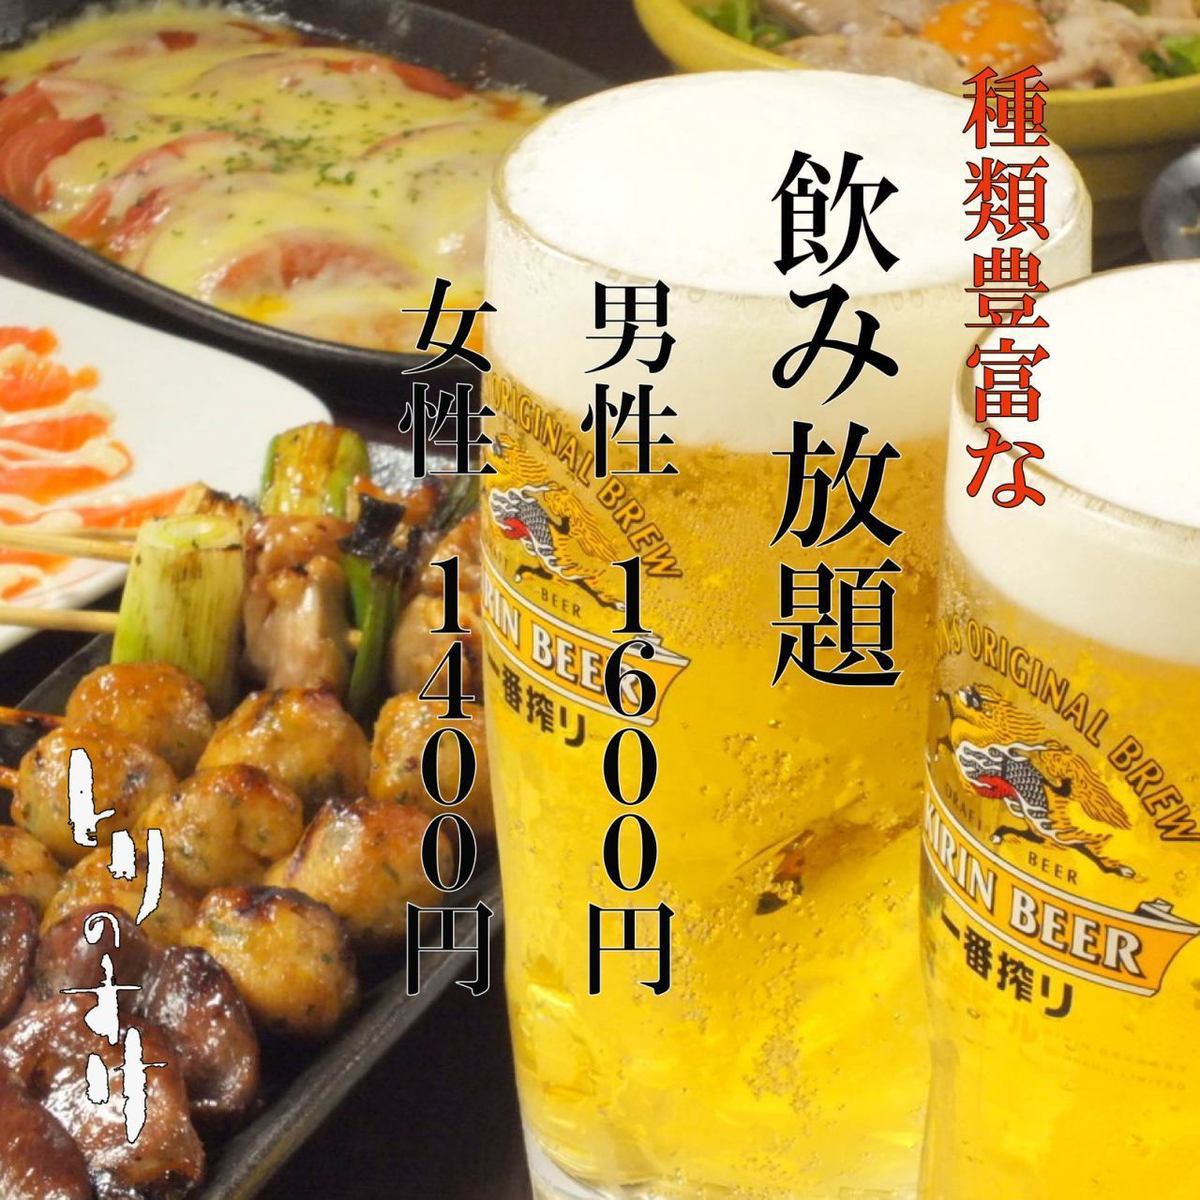 ≪Torinosuke可以单独出售♪≫冰镇啤酒和烤鸡肉串很好◎